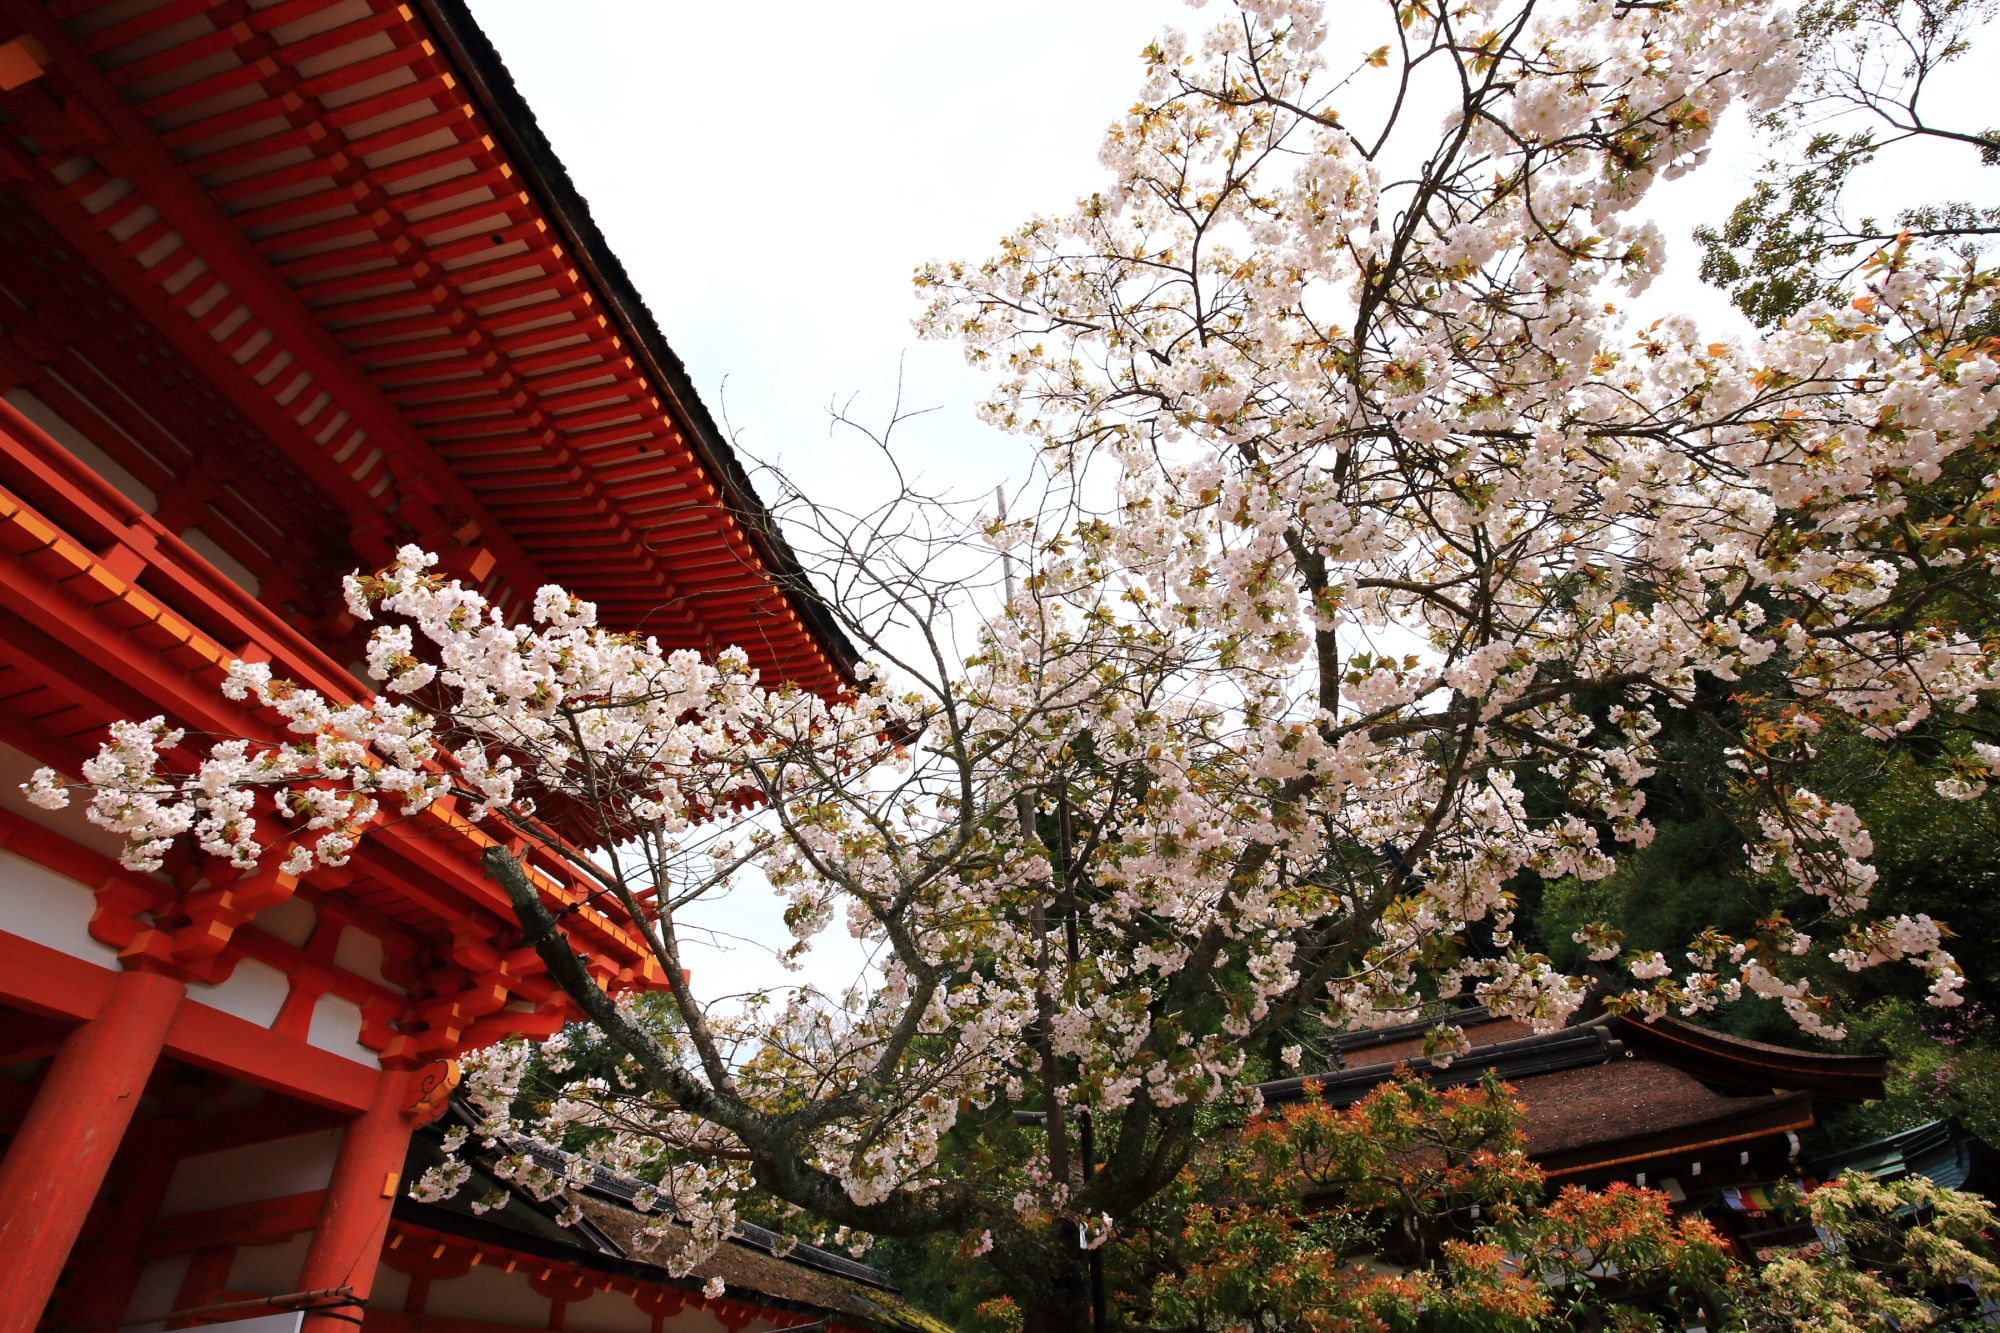 上賀茂神社の境内と楼門を春色に染める賀茂桜